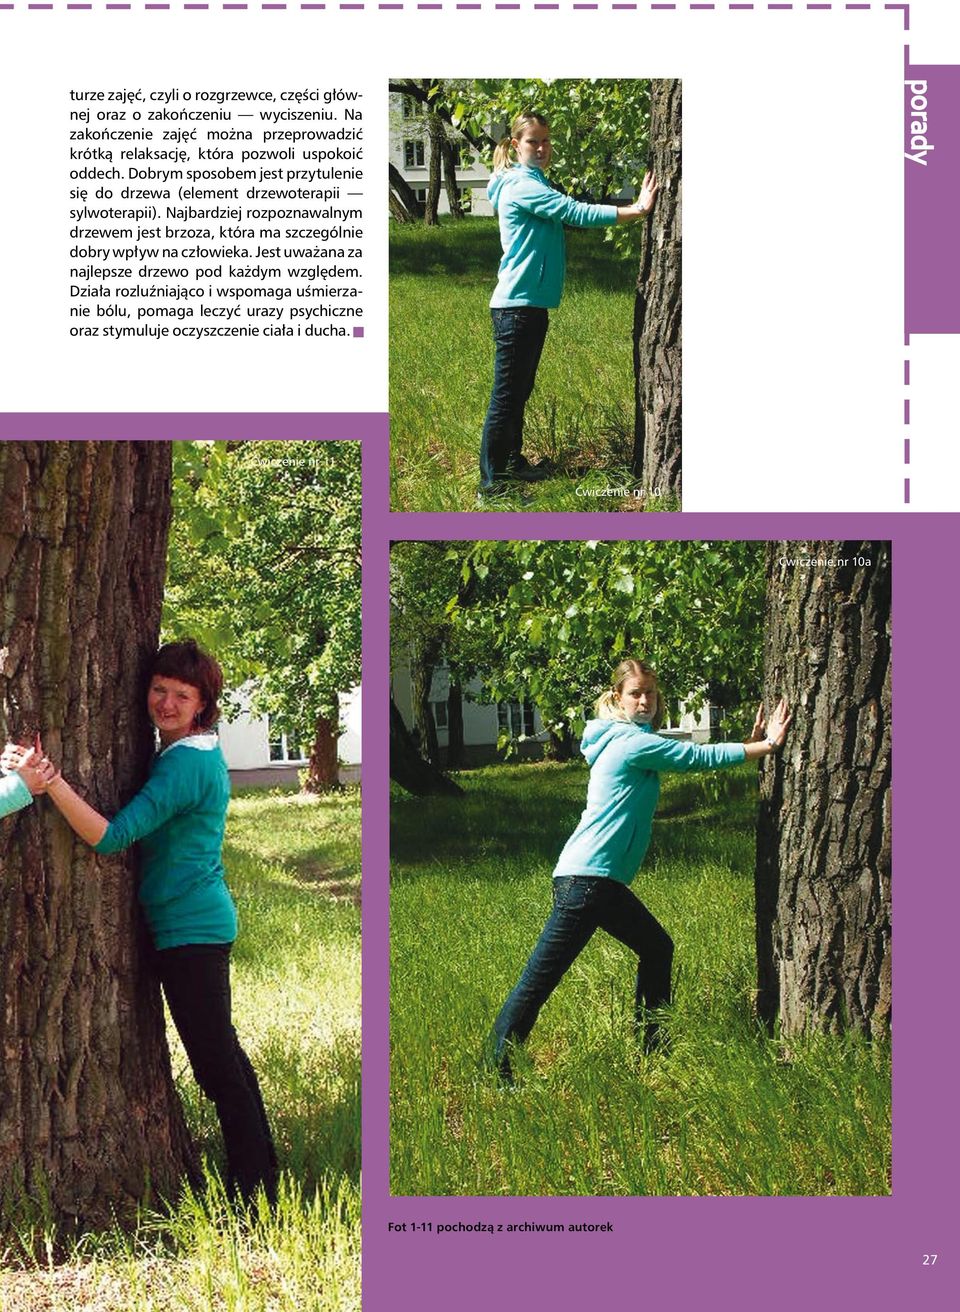 Dobrym sposobem jest przytulenie się do drzewa (element drzewoterapii sylwoterapii).